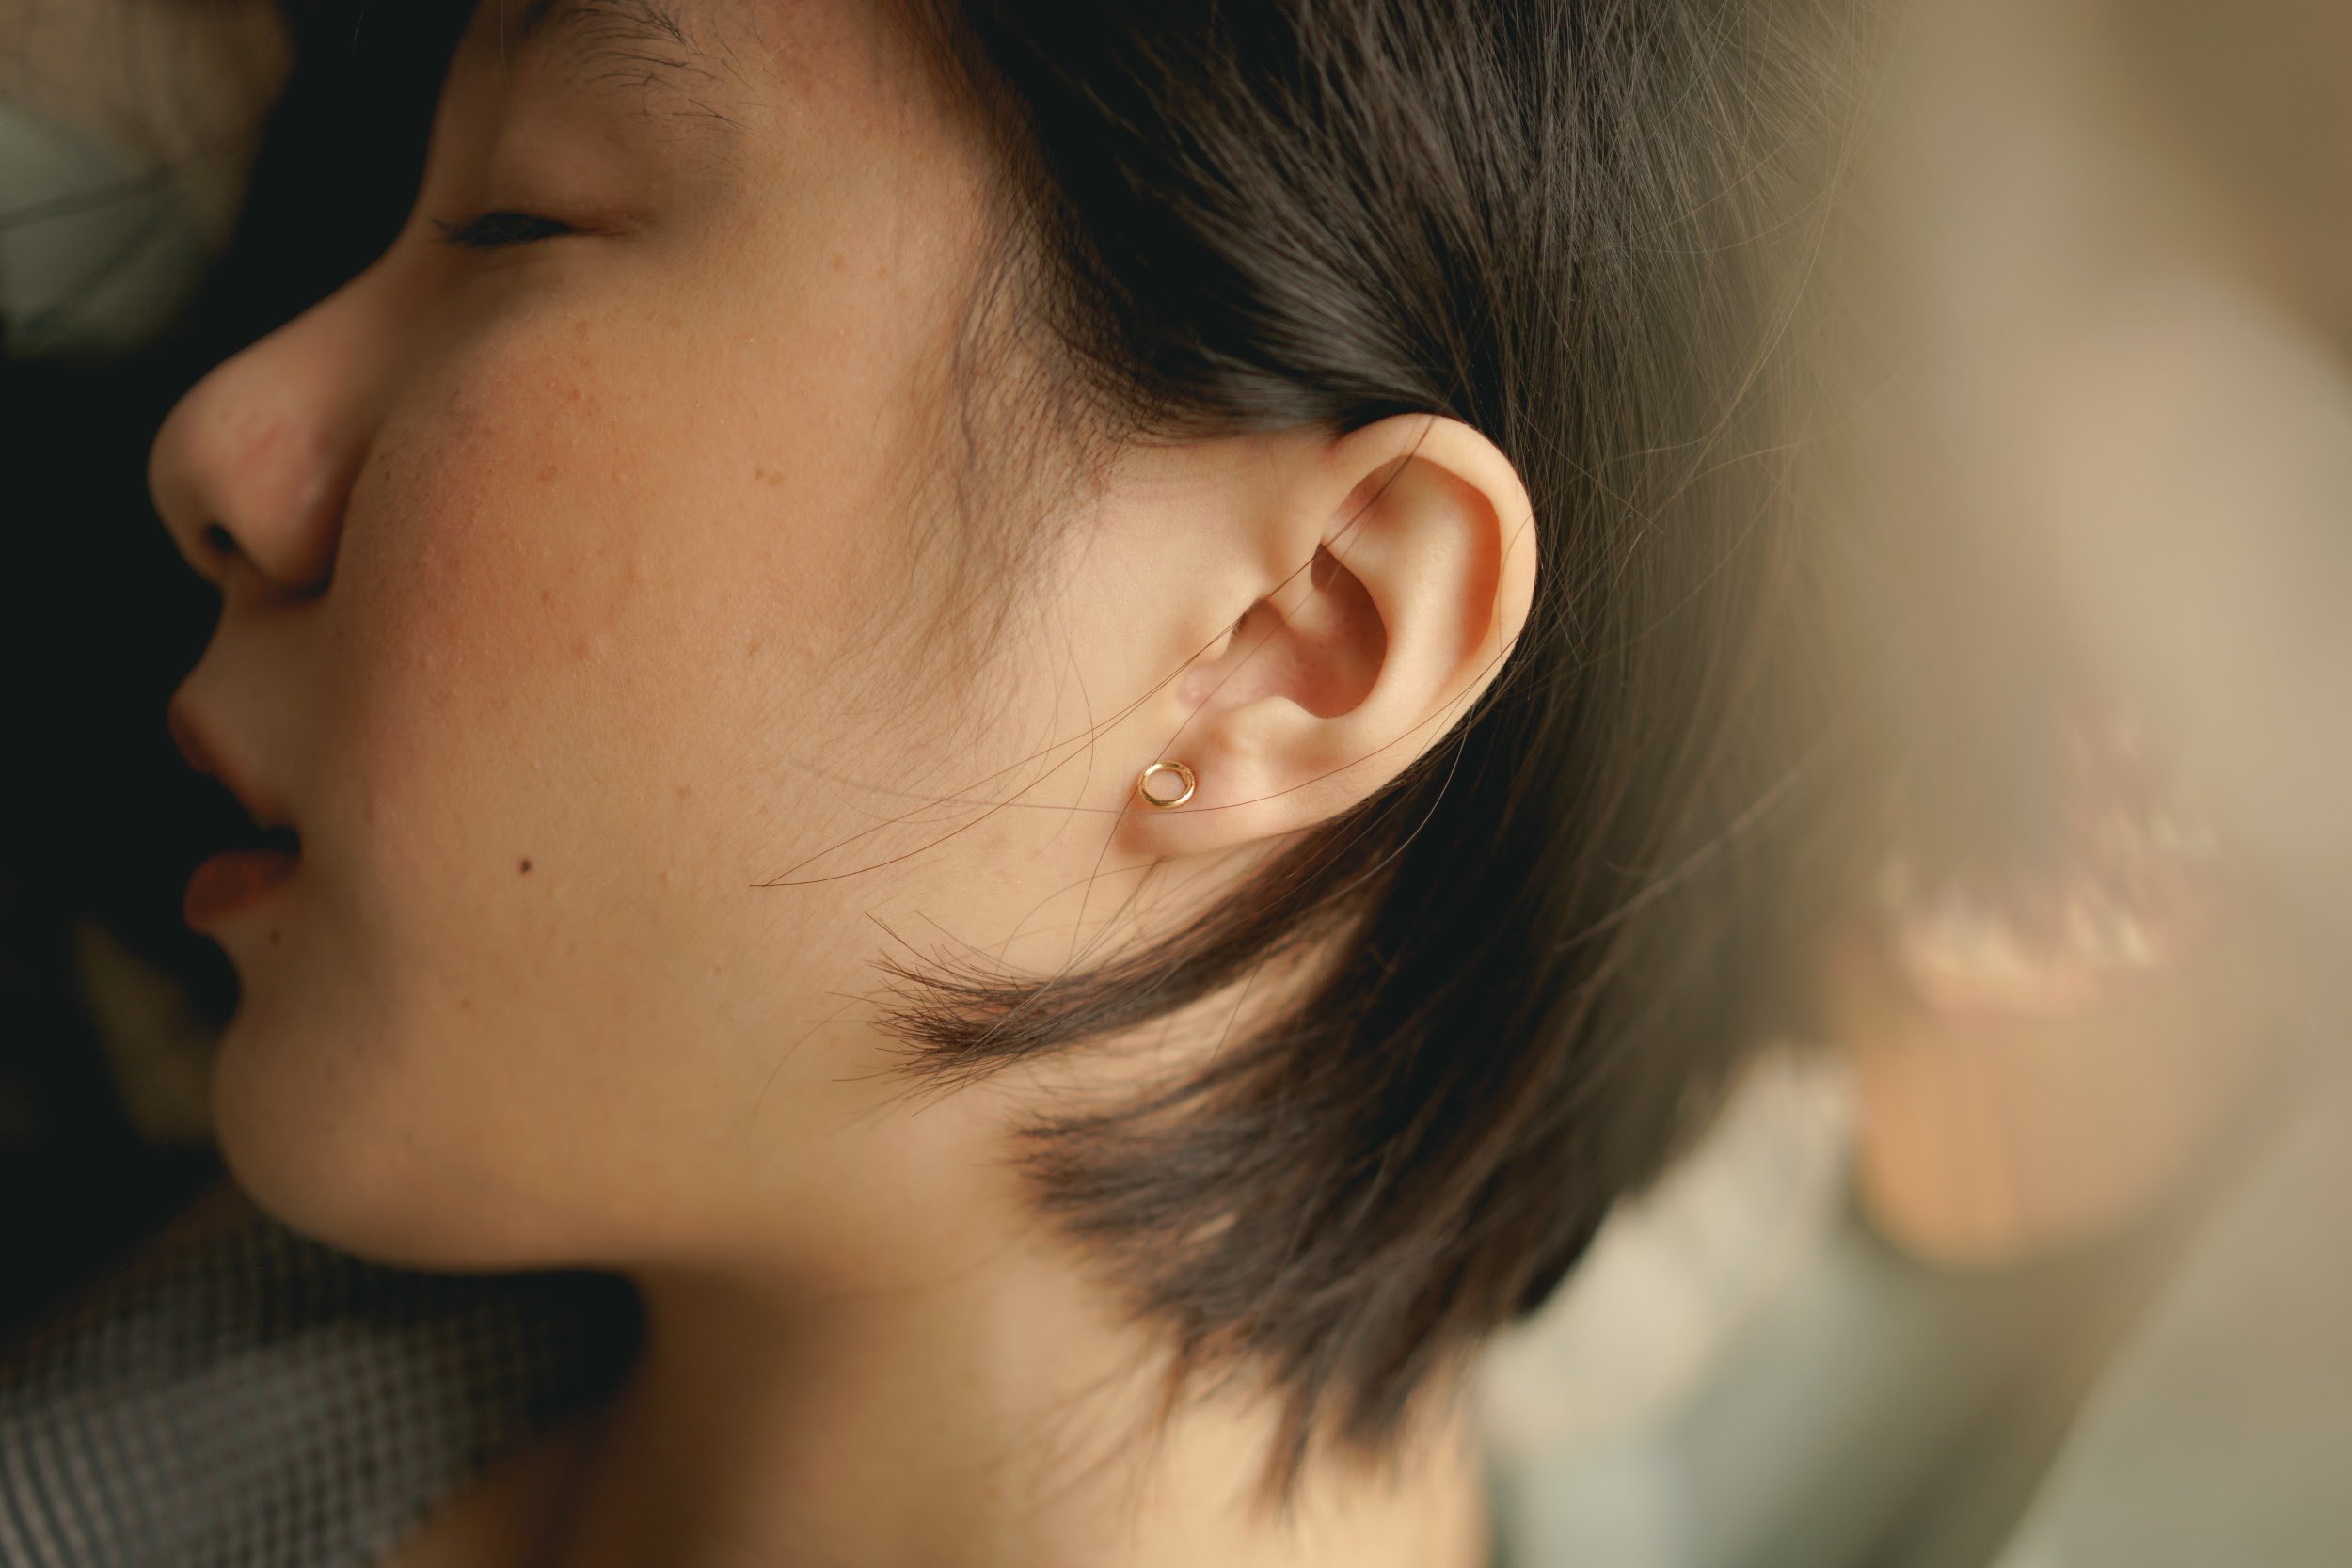 How Do You Sleep With An Ear Infection